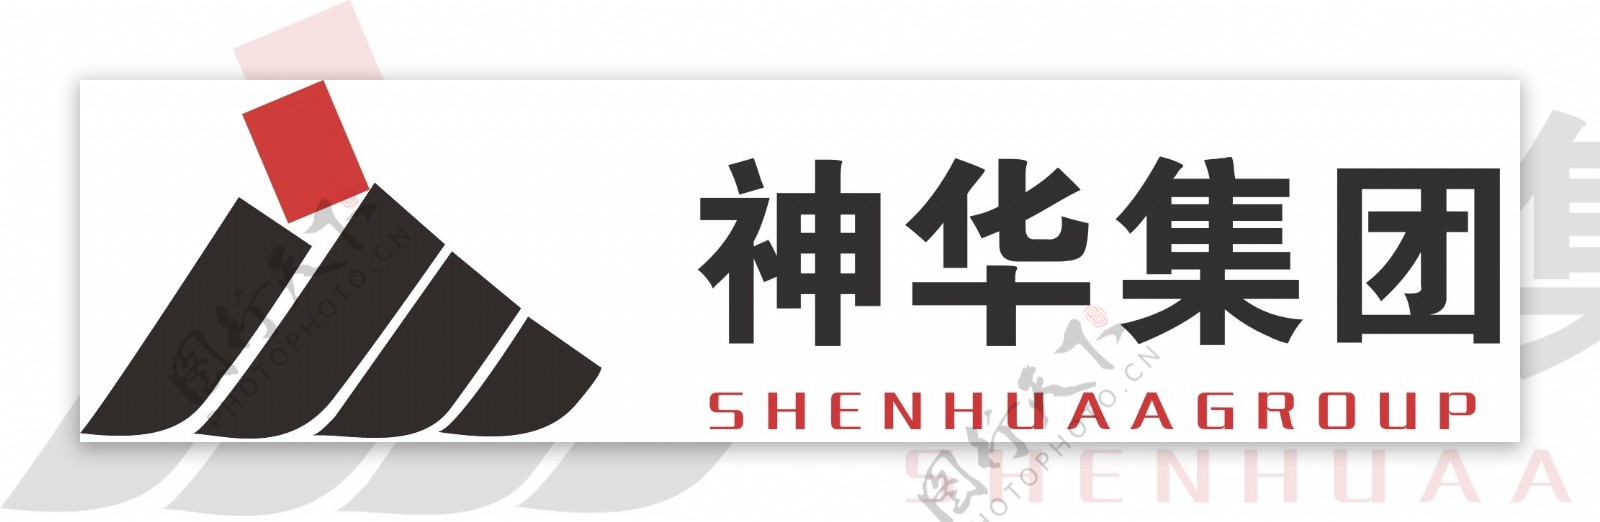 神华集团logo图片